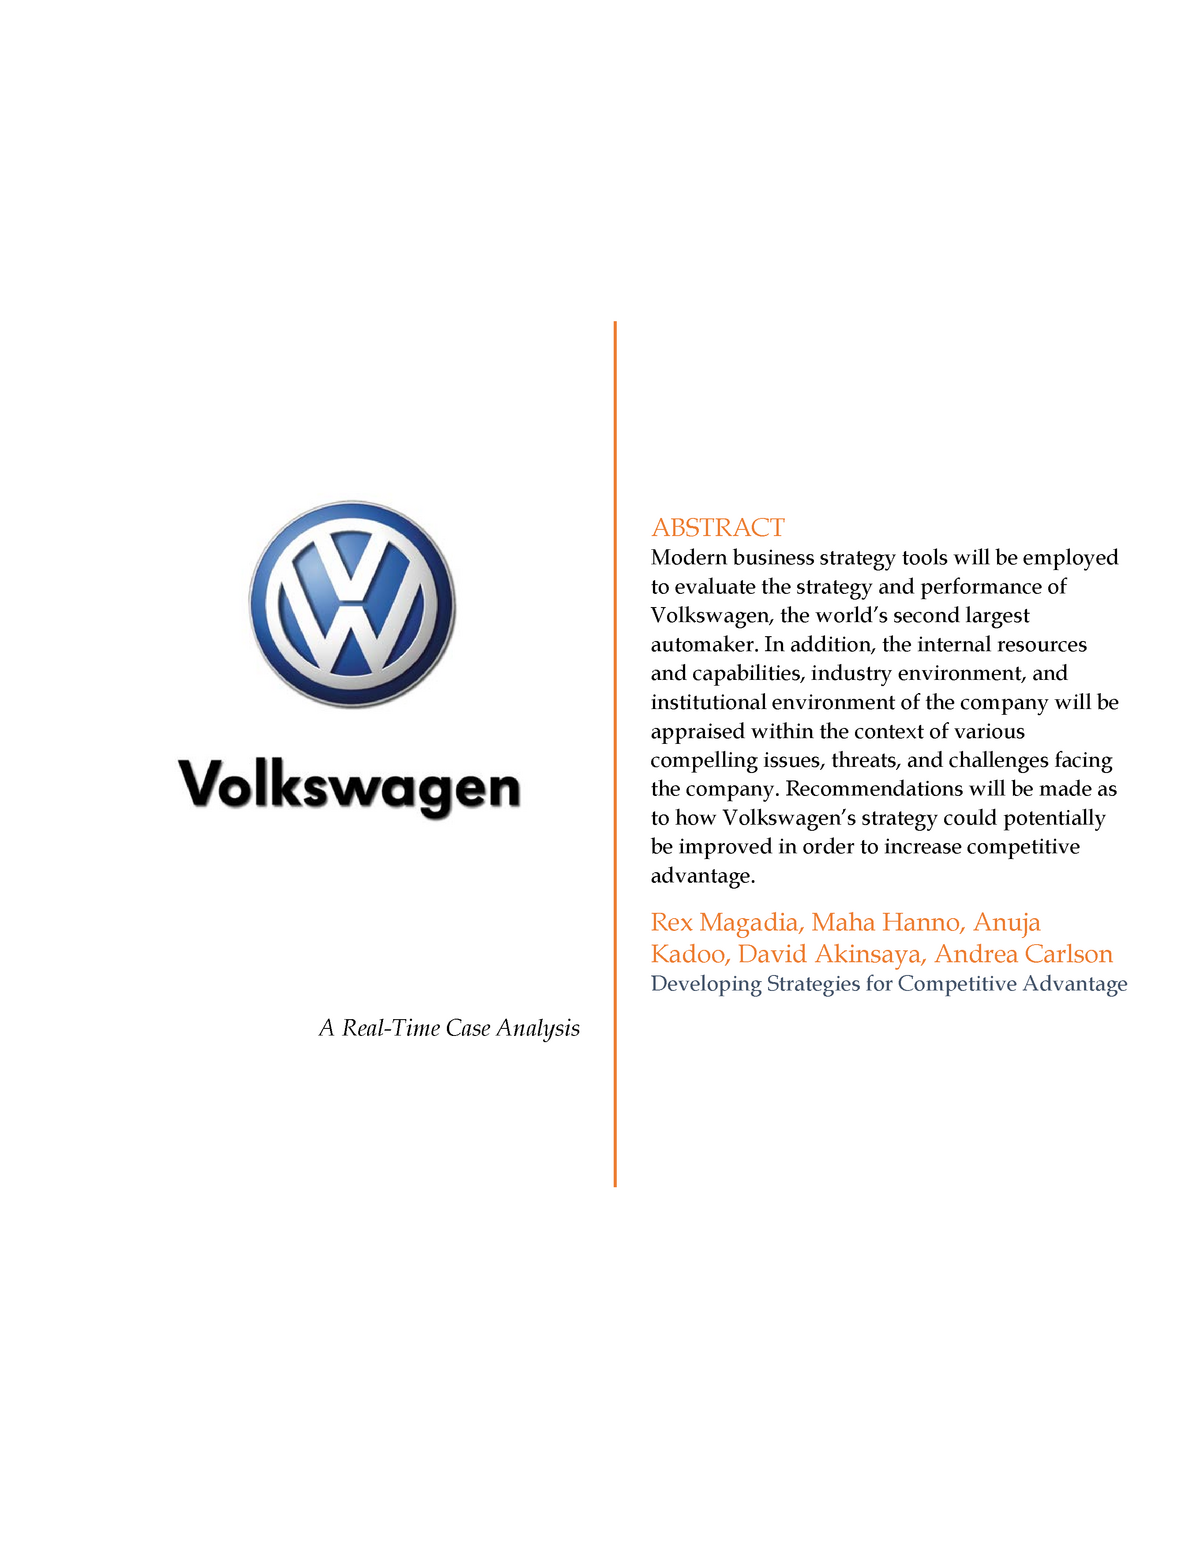 volkswagen case study pdf